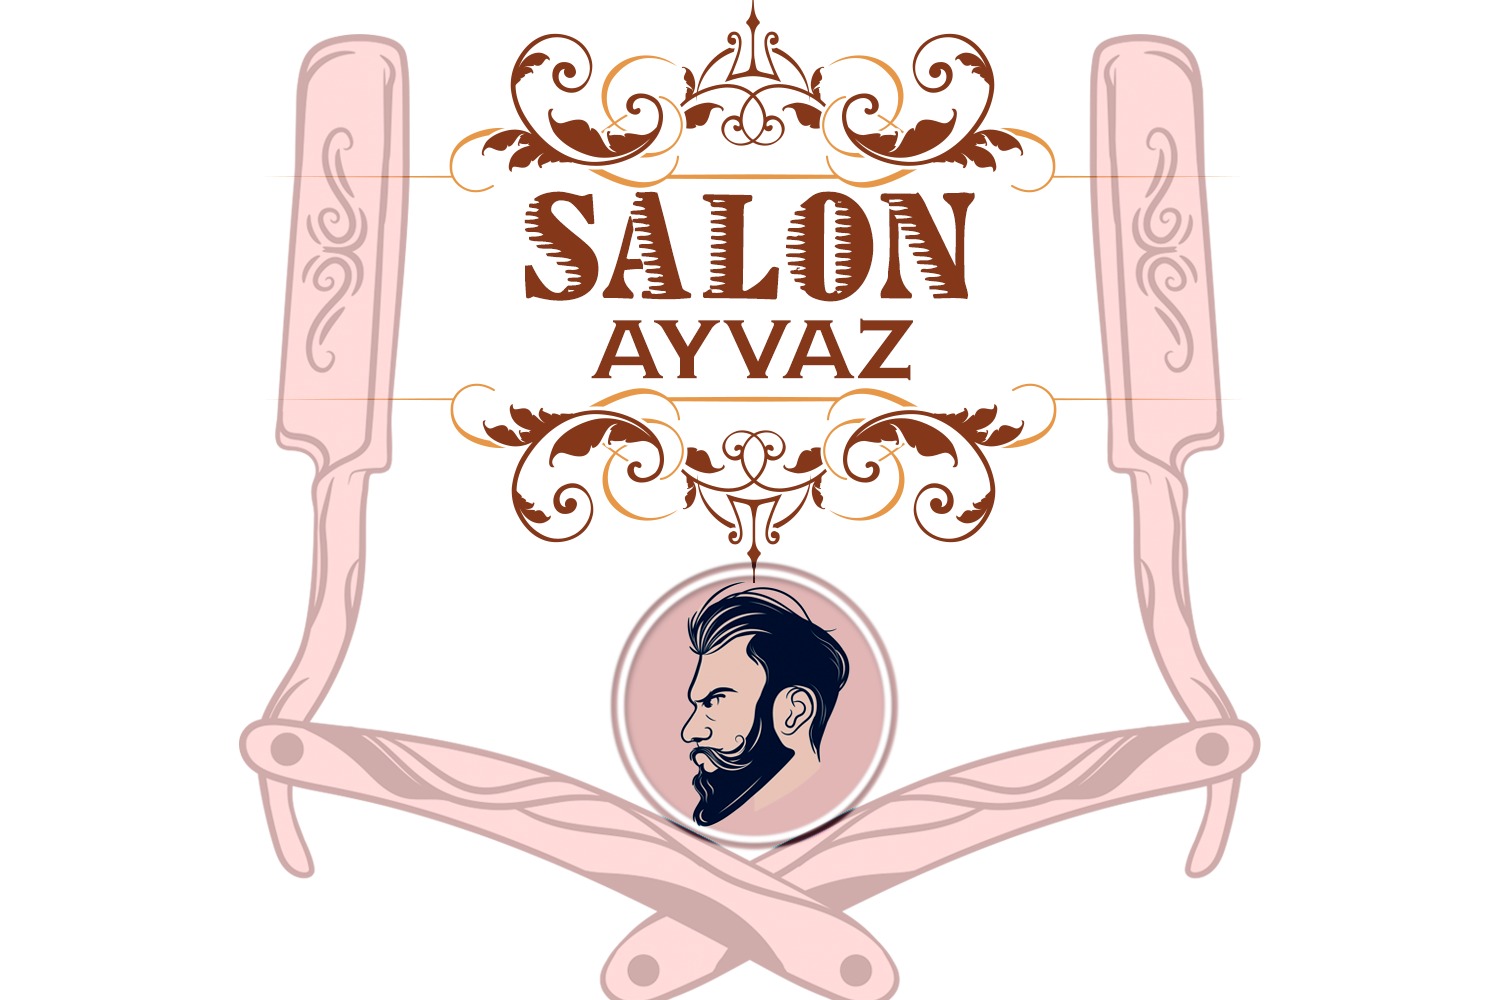 Saloon Ayvaz